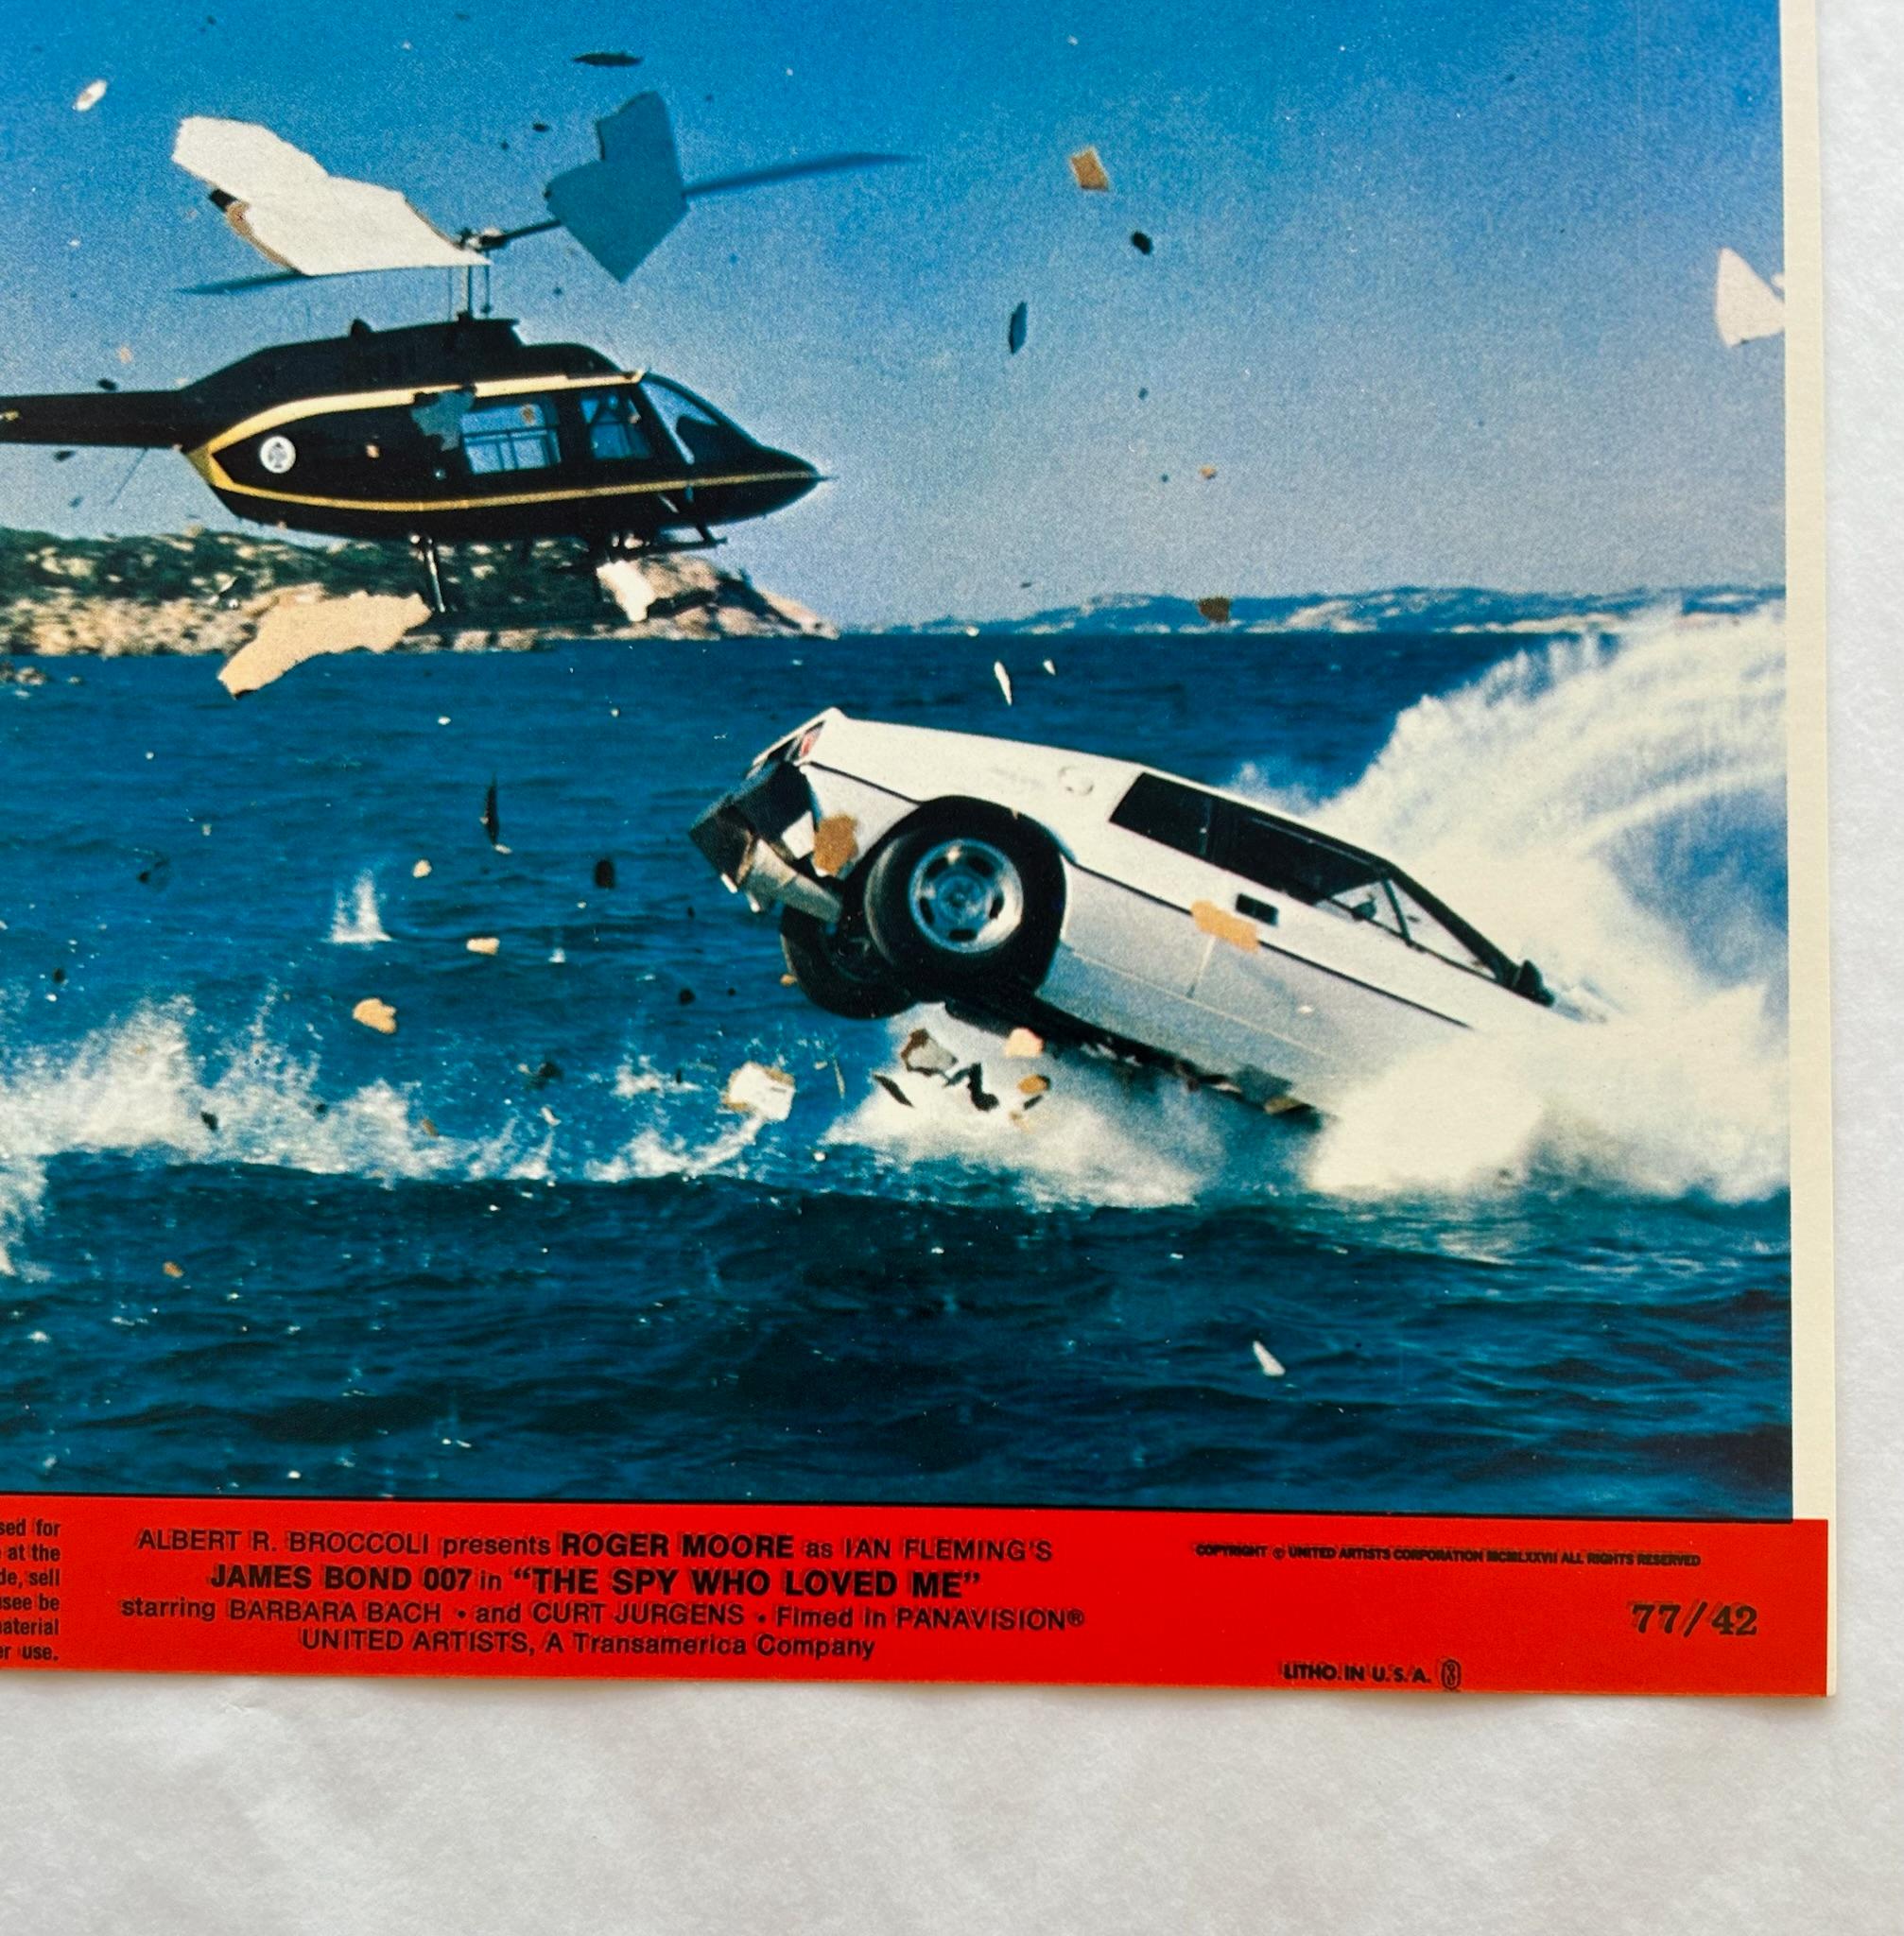 James Bond Der Spion, der mich liebte - Original 1977 Lobby Karte #7

Vintage 1977 Der Spion, der mich liebte Lobby-Karte von 007's Auto stürzt ins Wasser mit einem Hubschrauber in der Verfolgung 

Optionen für die Einrahmung verfügbar: Schwarz,